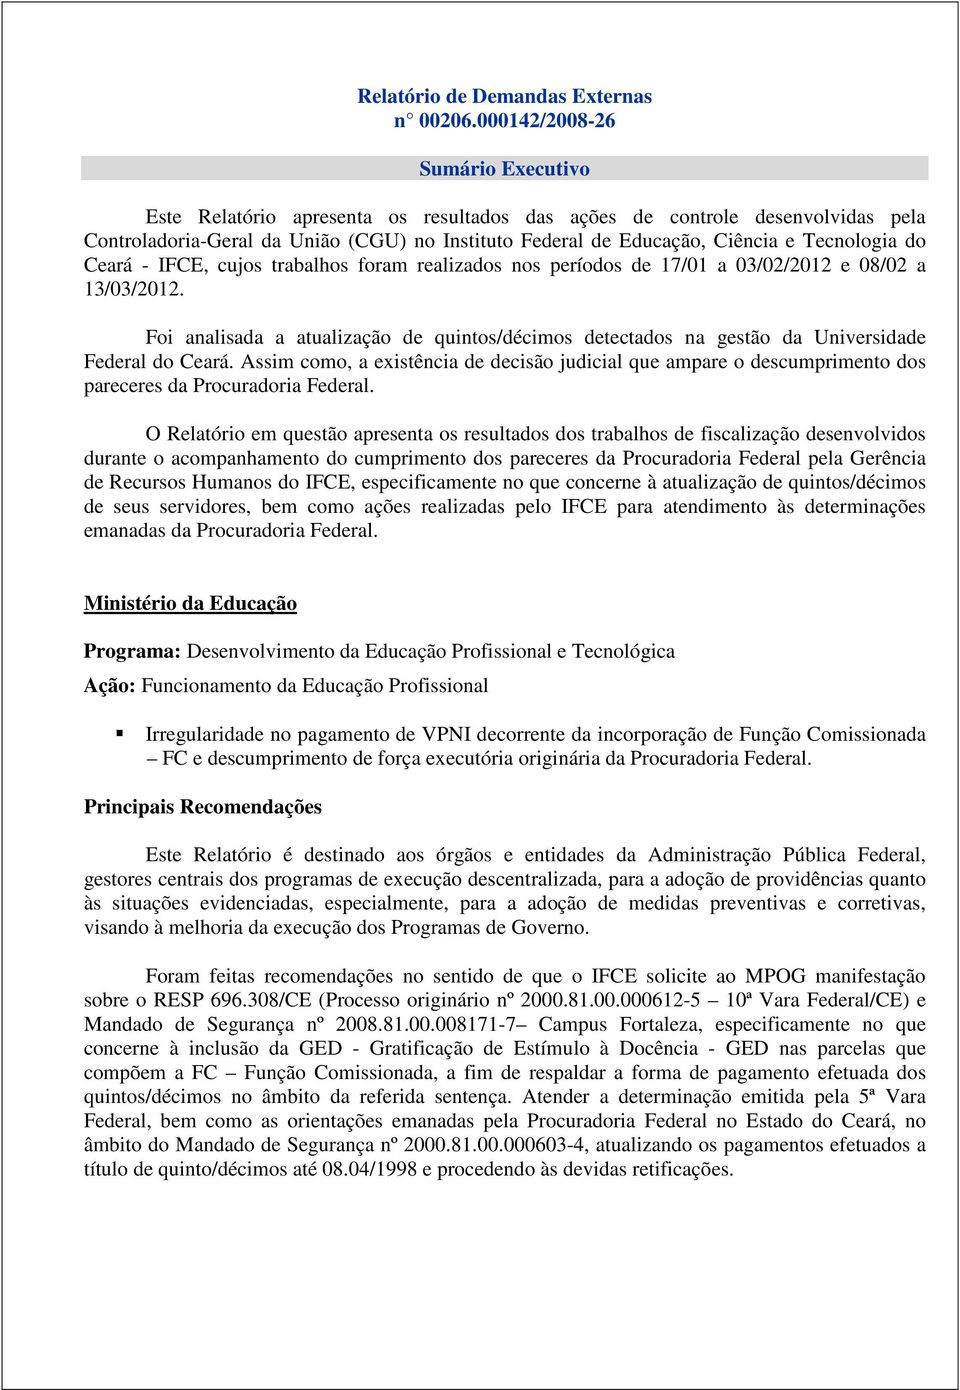 Tecnologia do Ceará - IFCE, cujos trabalhos foram realizados nos períodos de 17/01 a 03/02/2012 e 08/02 a 13/03/2012.